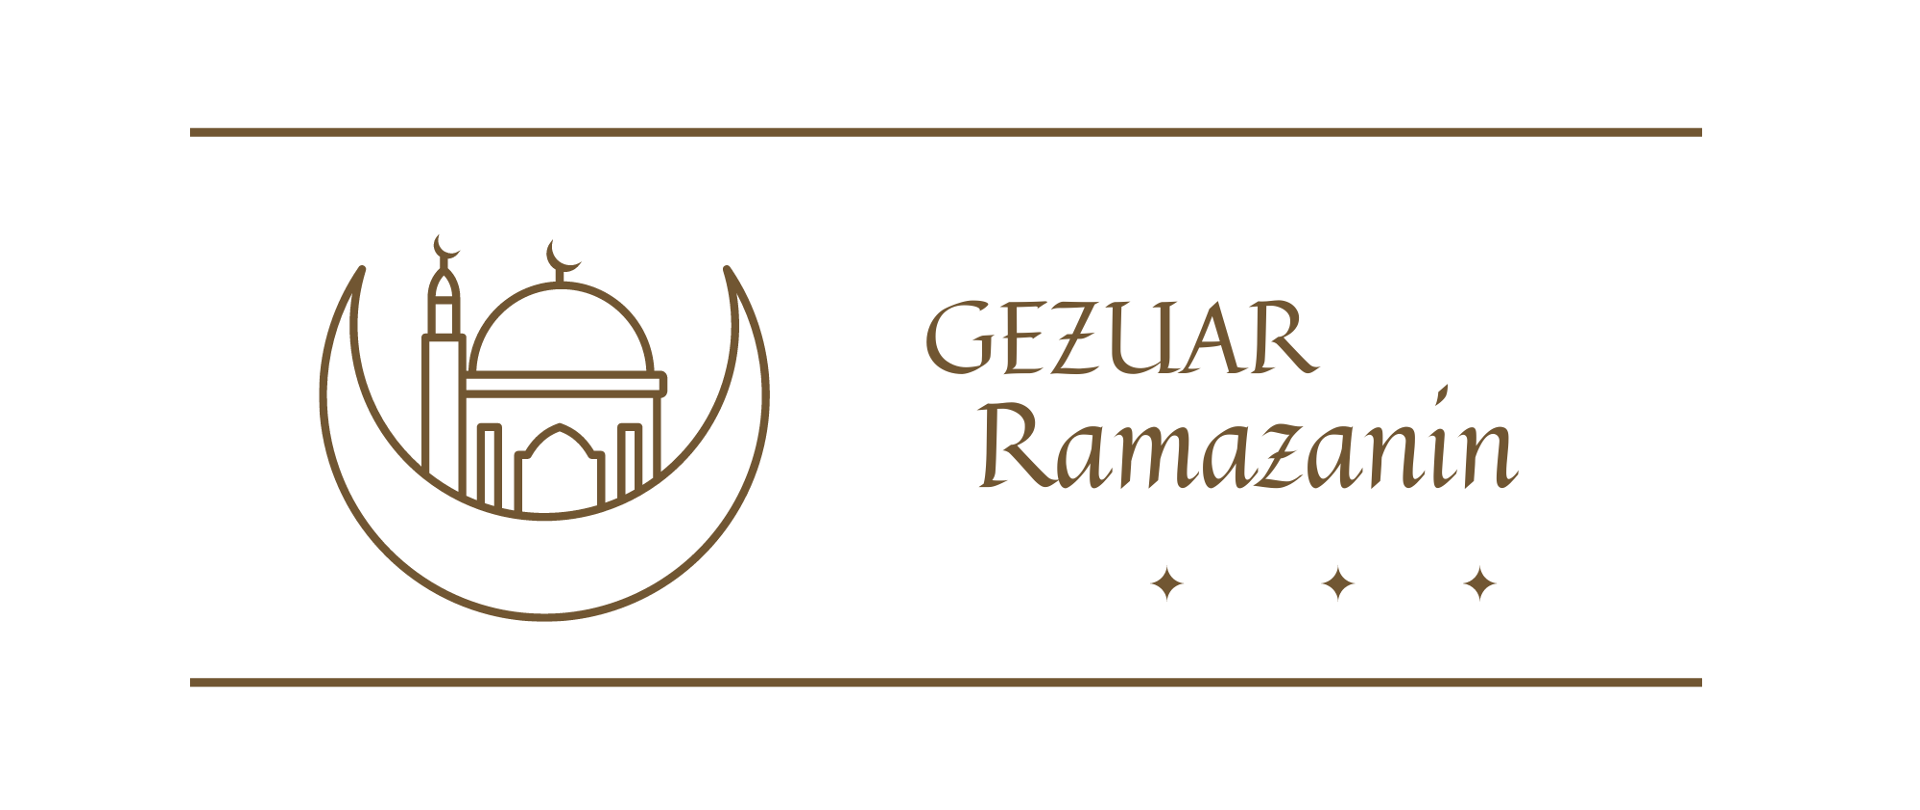 Społeczność muzułmańska w Republice Albanii obchodzi Ramadan